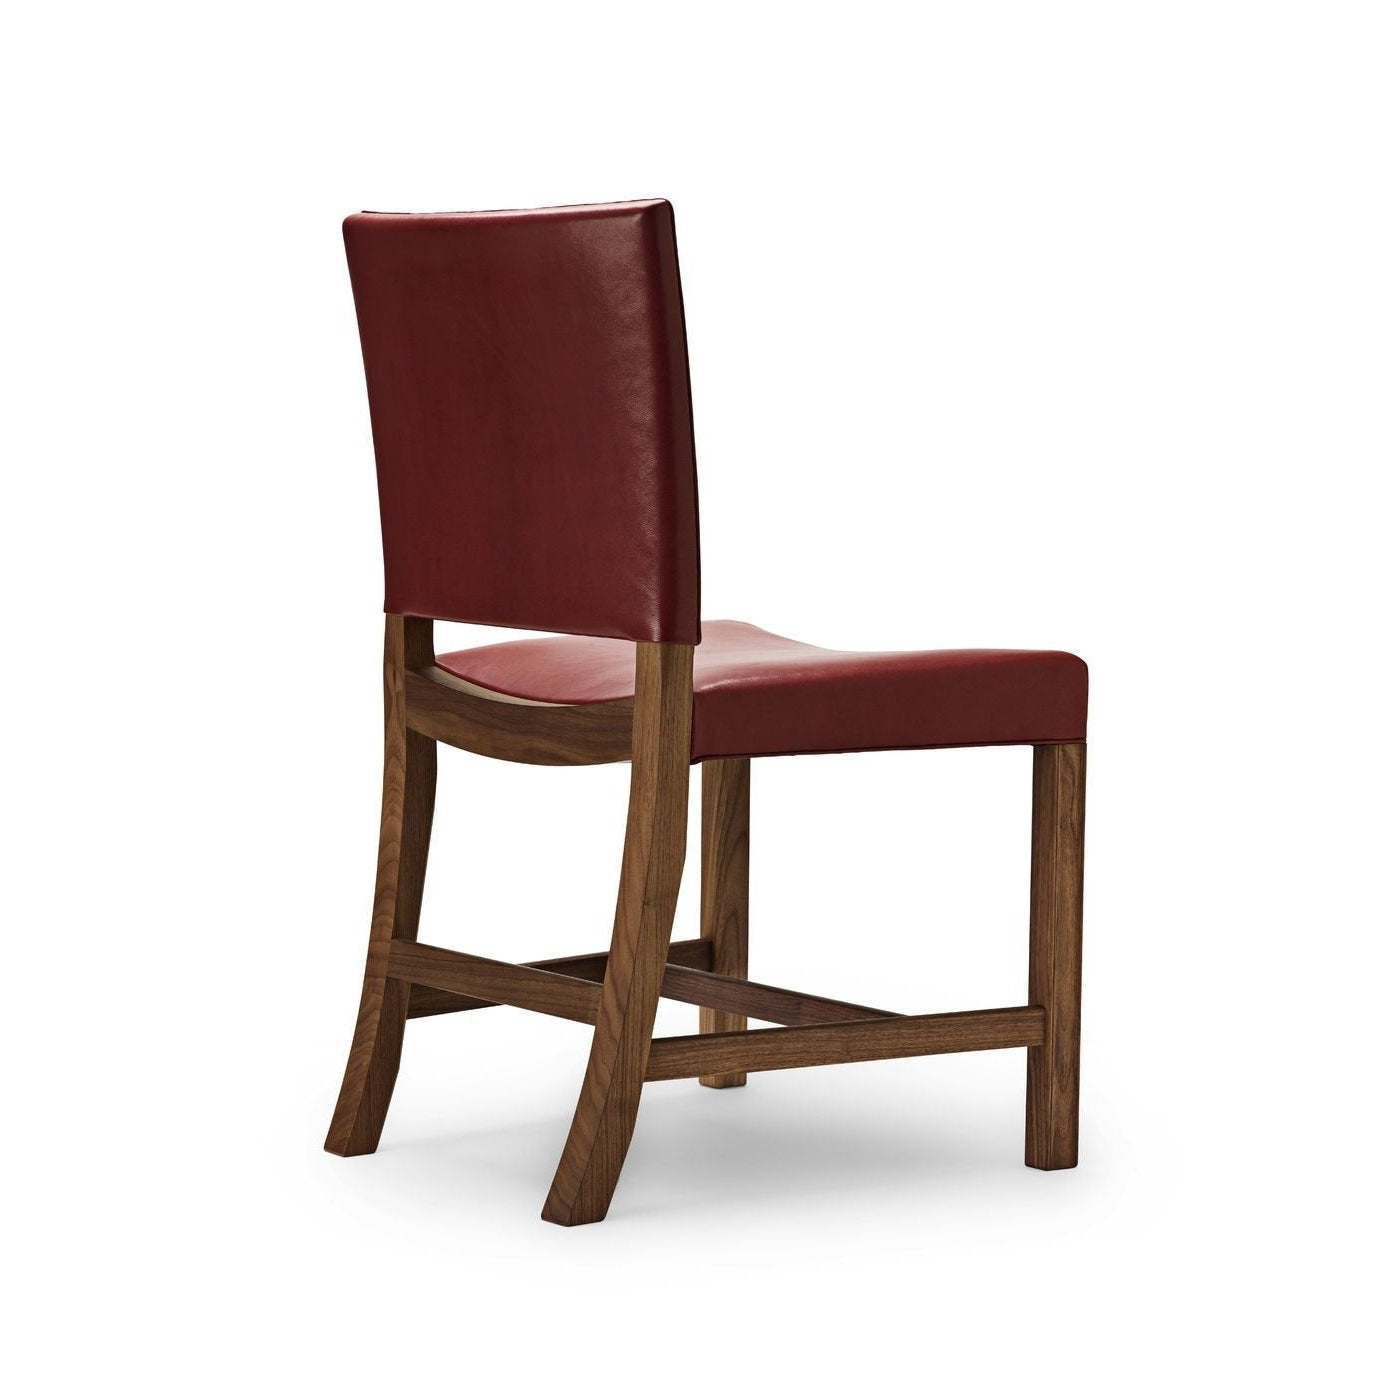 Carl Hansen KK47510 Der rote Stuhl, lackierte Walnuss/rote Ziegenleder